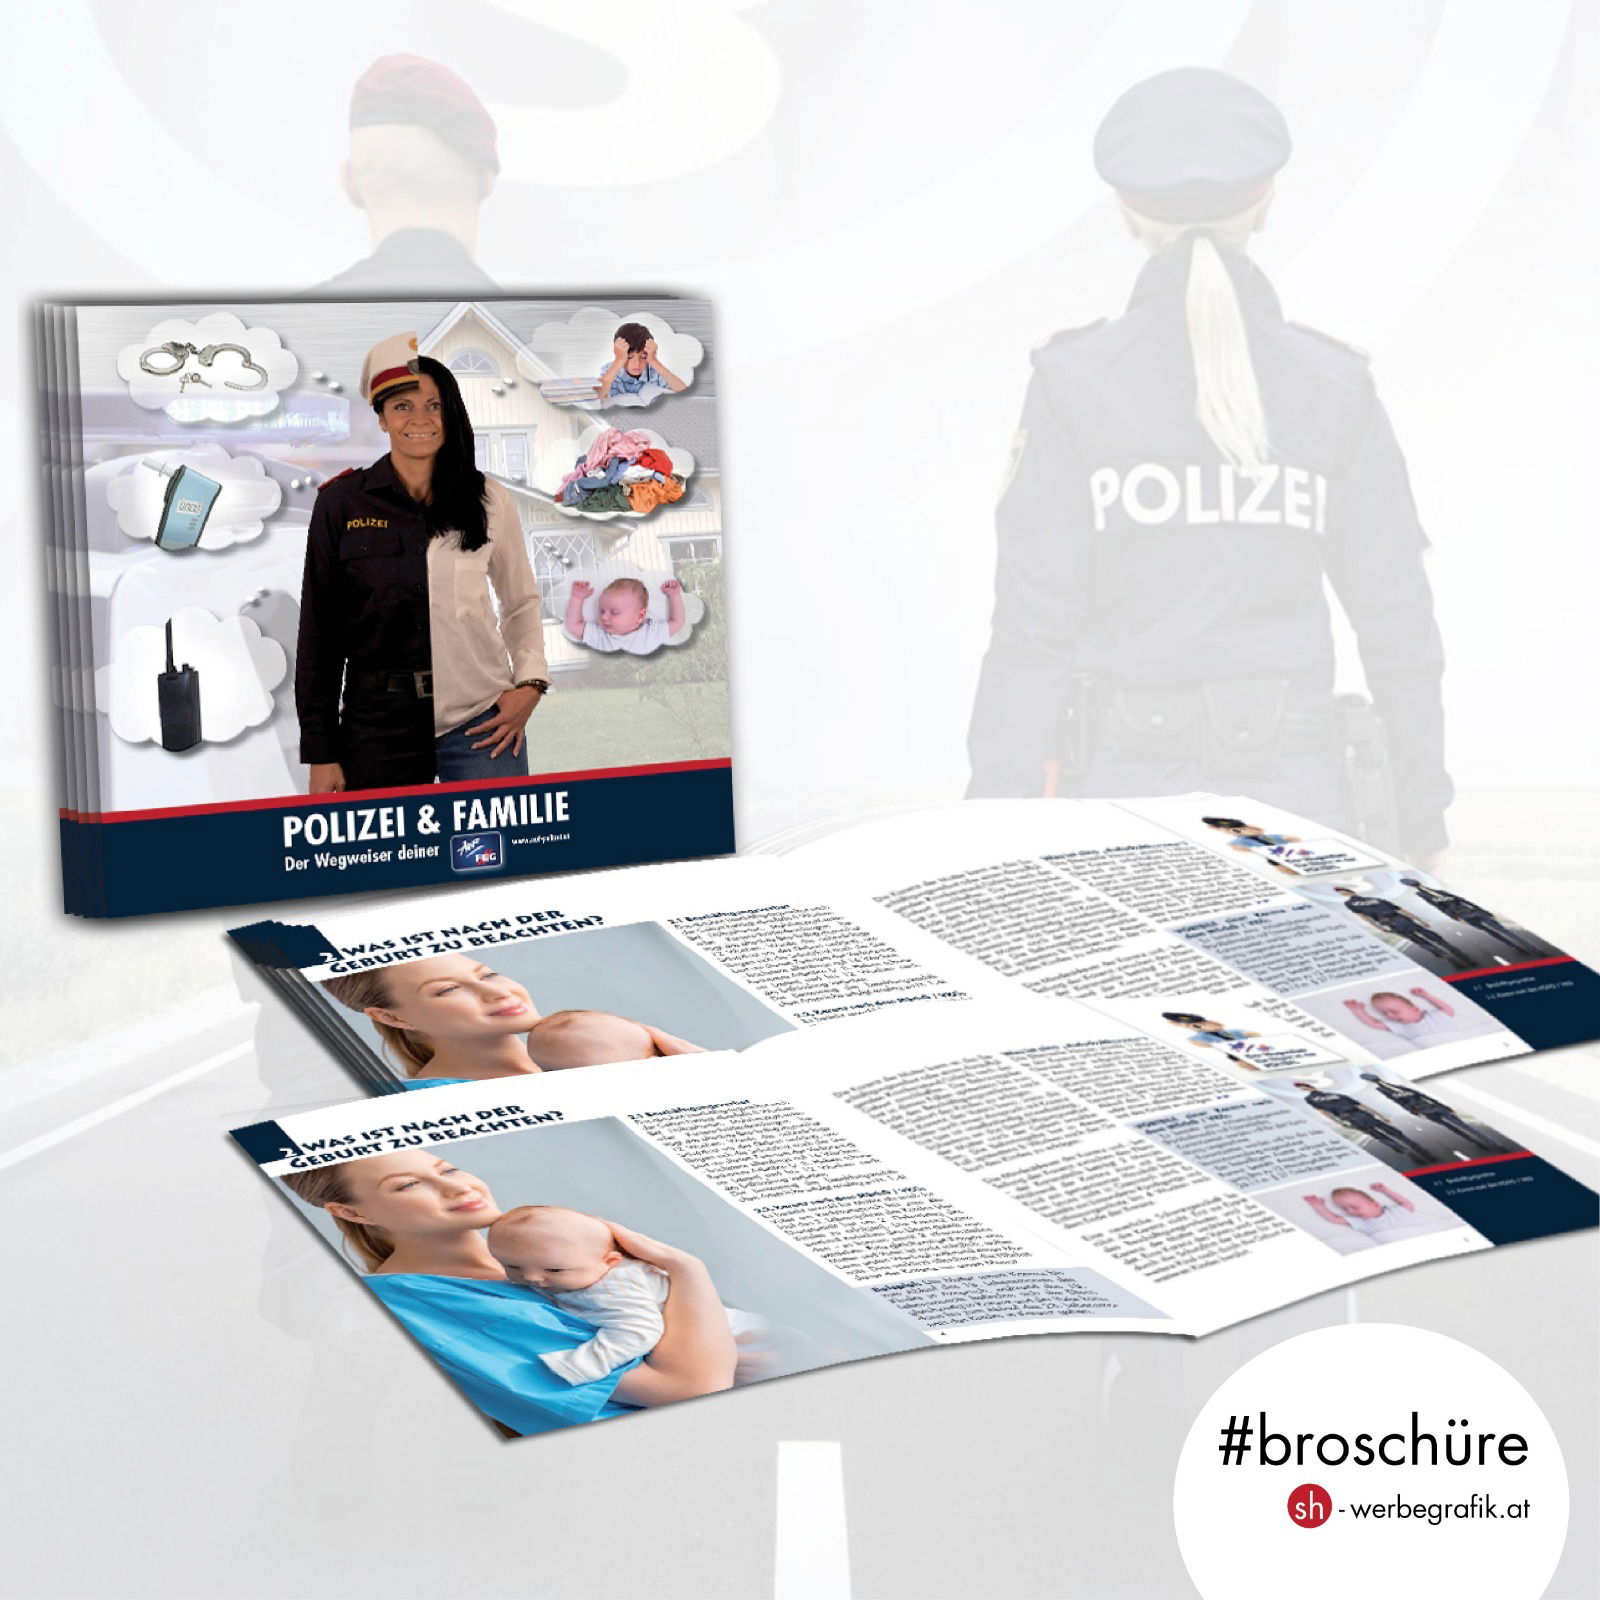 Broschüre "Polizei & Familie!